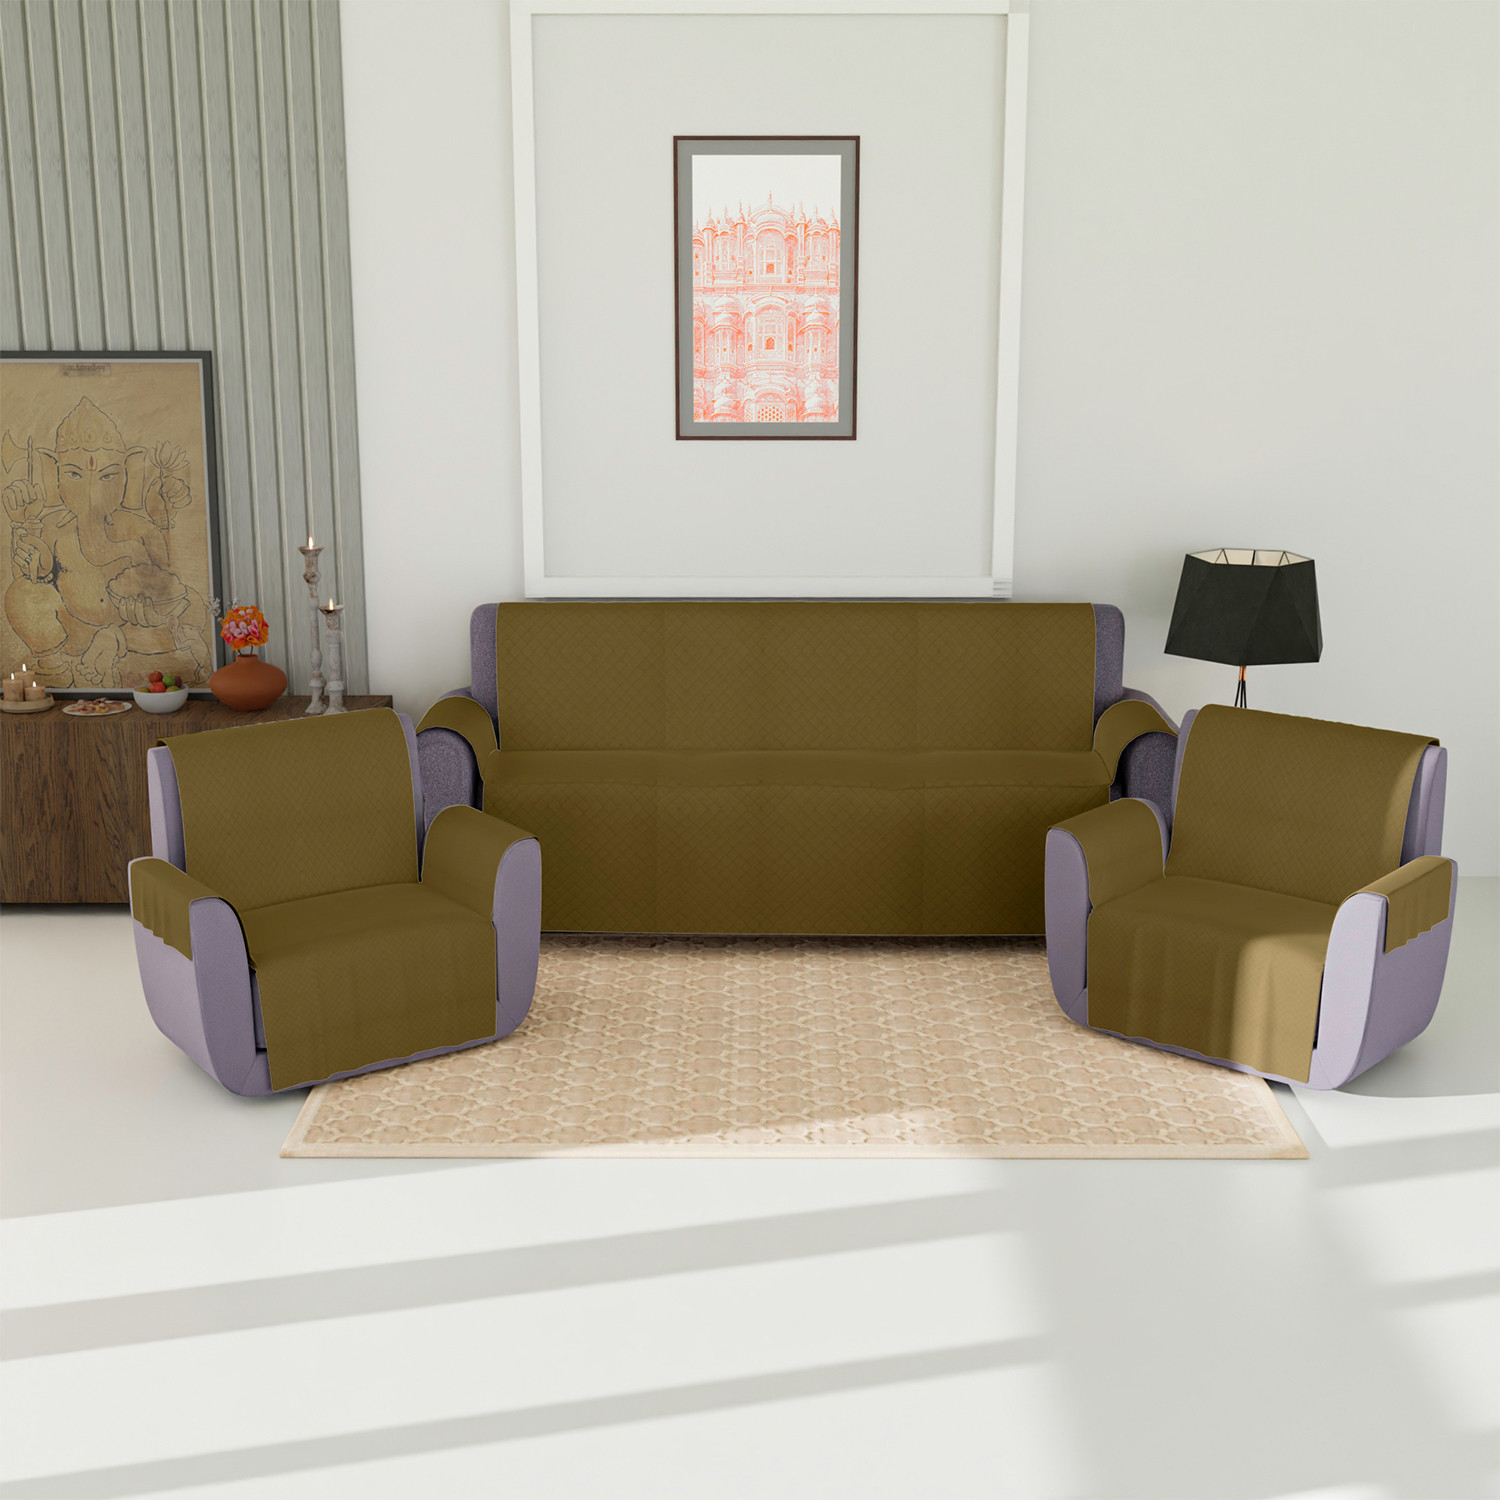 Kuber Industries Sofa Cover | Velvet Sofa Cover | 3+1+1 Seater Sofa Cover for Home Décor | 450 GSM Sofa Cover Set for Living Room | Sofa Slipcover | Couch Cover | Gold